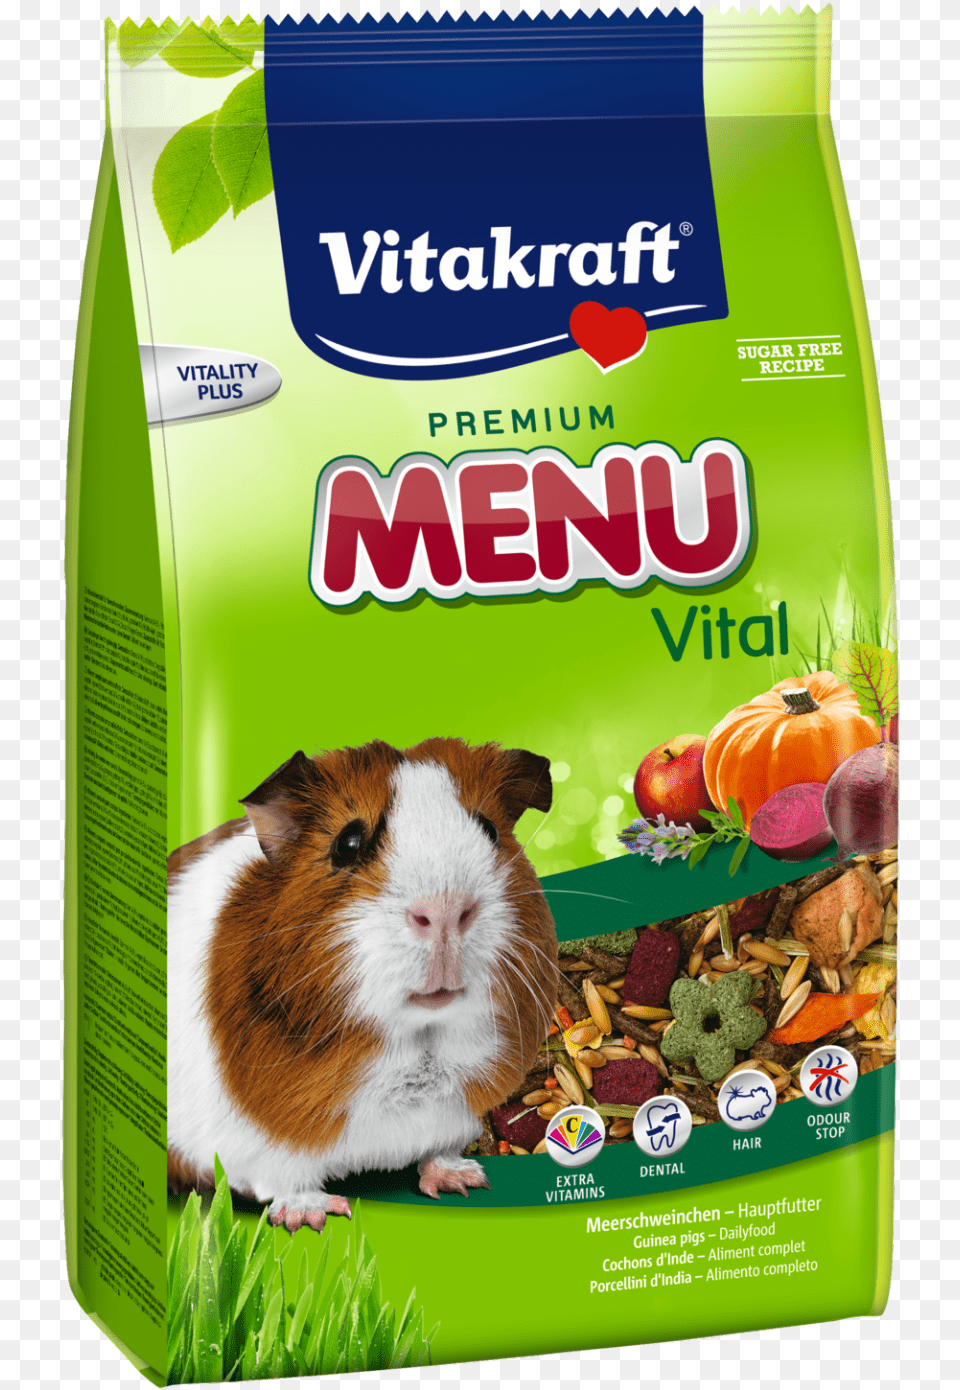 Vitakraft Premium Menu Vital Guinea Pig 400 G Buy Online Vitakraft Menu Vital Hamster, Animal, Mammal, Rat, Rodent Png